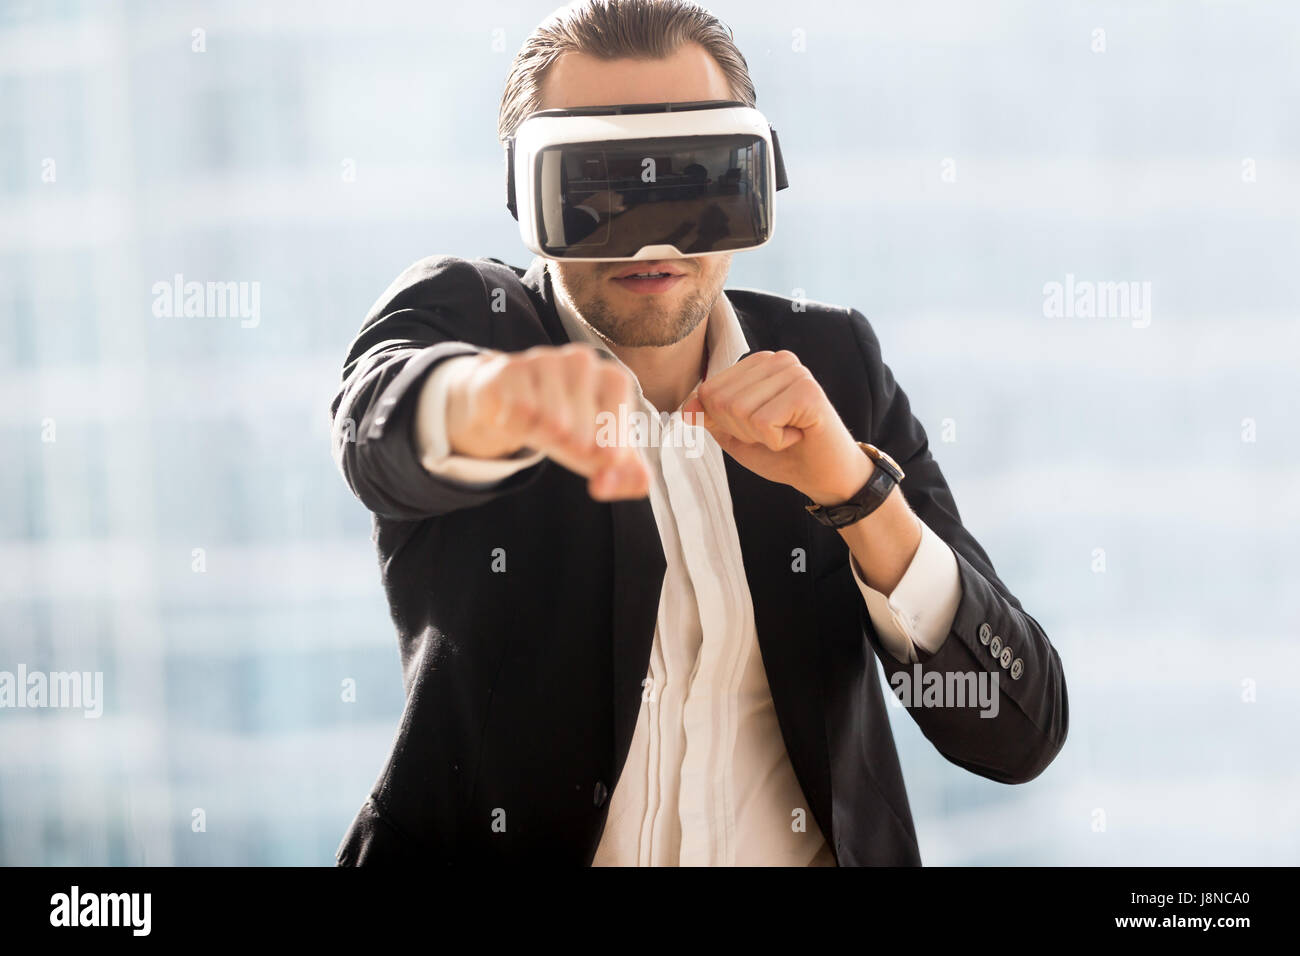 La boxe de l'homme avec des lunettes de réalité virtuelle sur la tête Banque D'Images